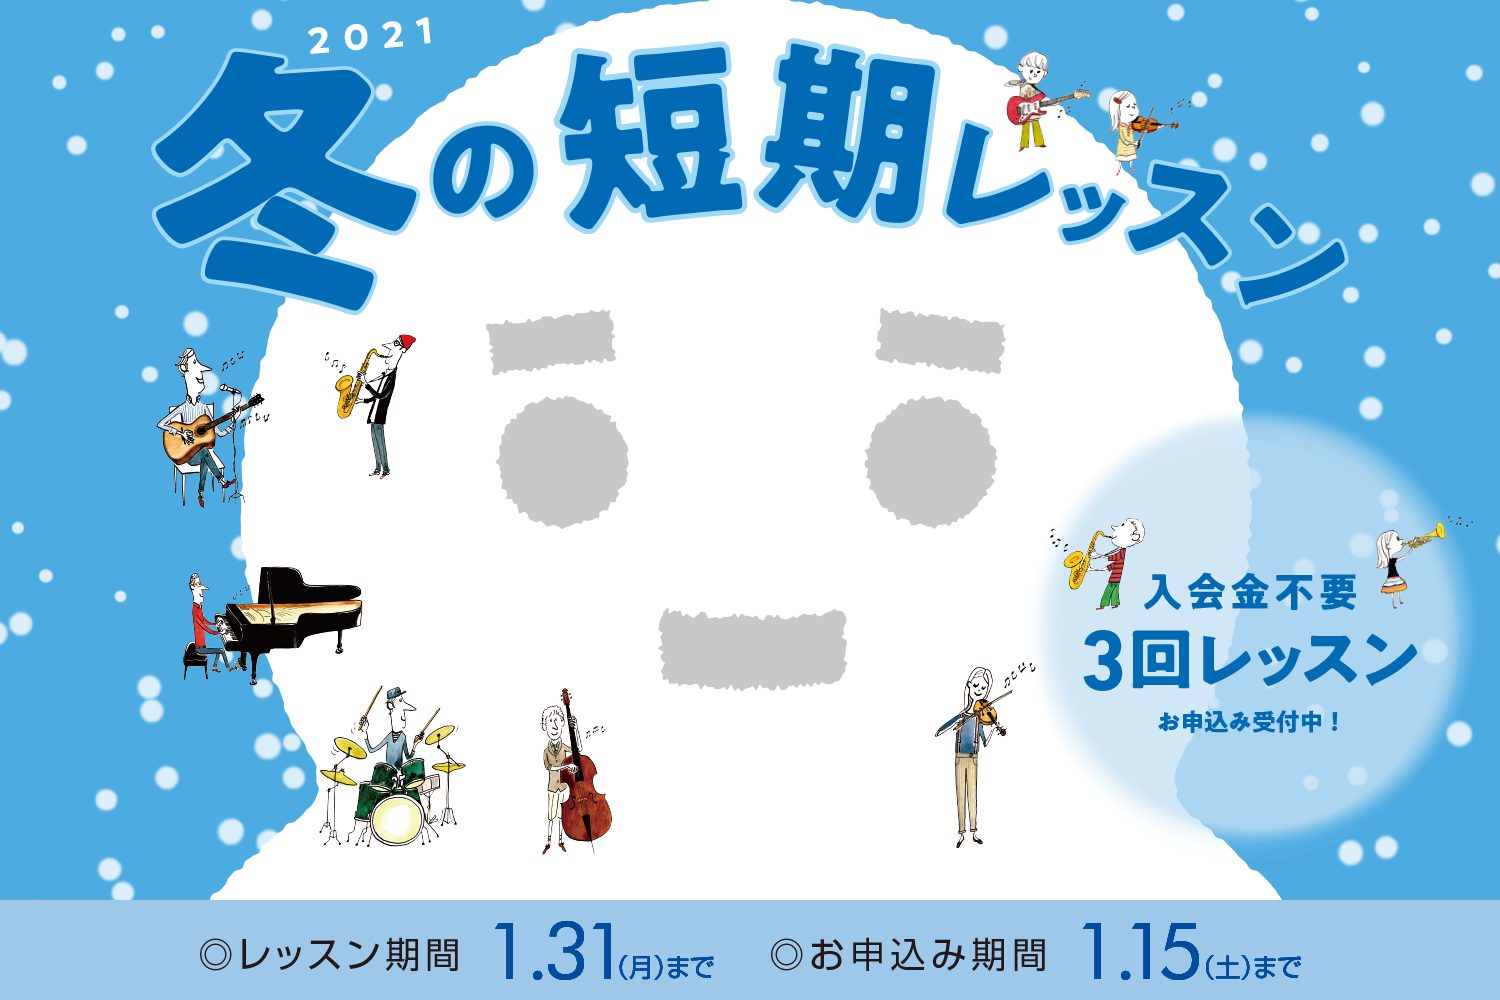 *入会金不要で、1コース3回のレッスンが受けられる！ 現在島村楽器の音楽教室では、冬の短期レッスンを受付中です。 [https://www.shimamura.co.jp/p/lesson/campaign/short_term_lesson.html::title=冬の短期レッスン概要はこちら]  […]